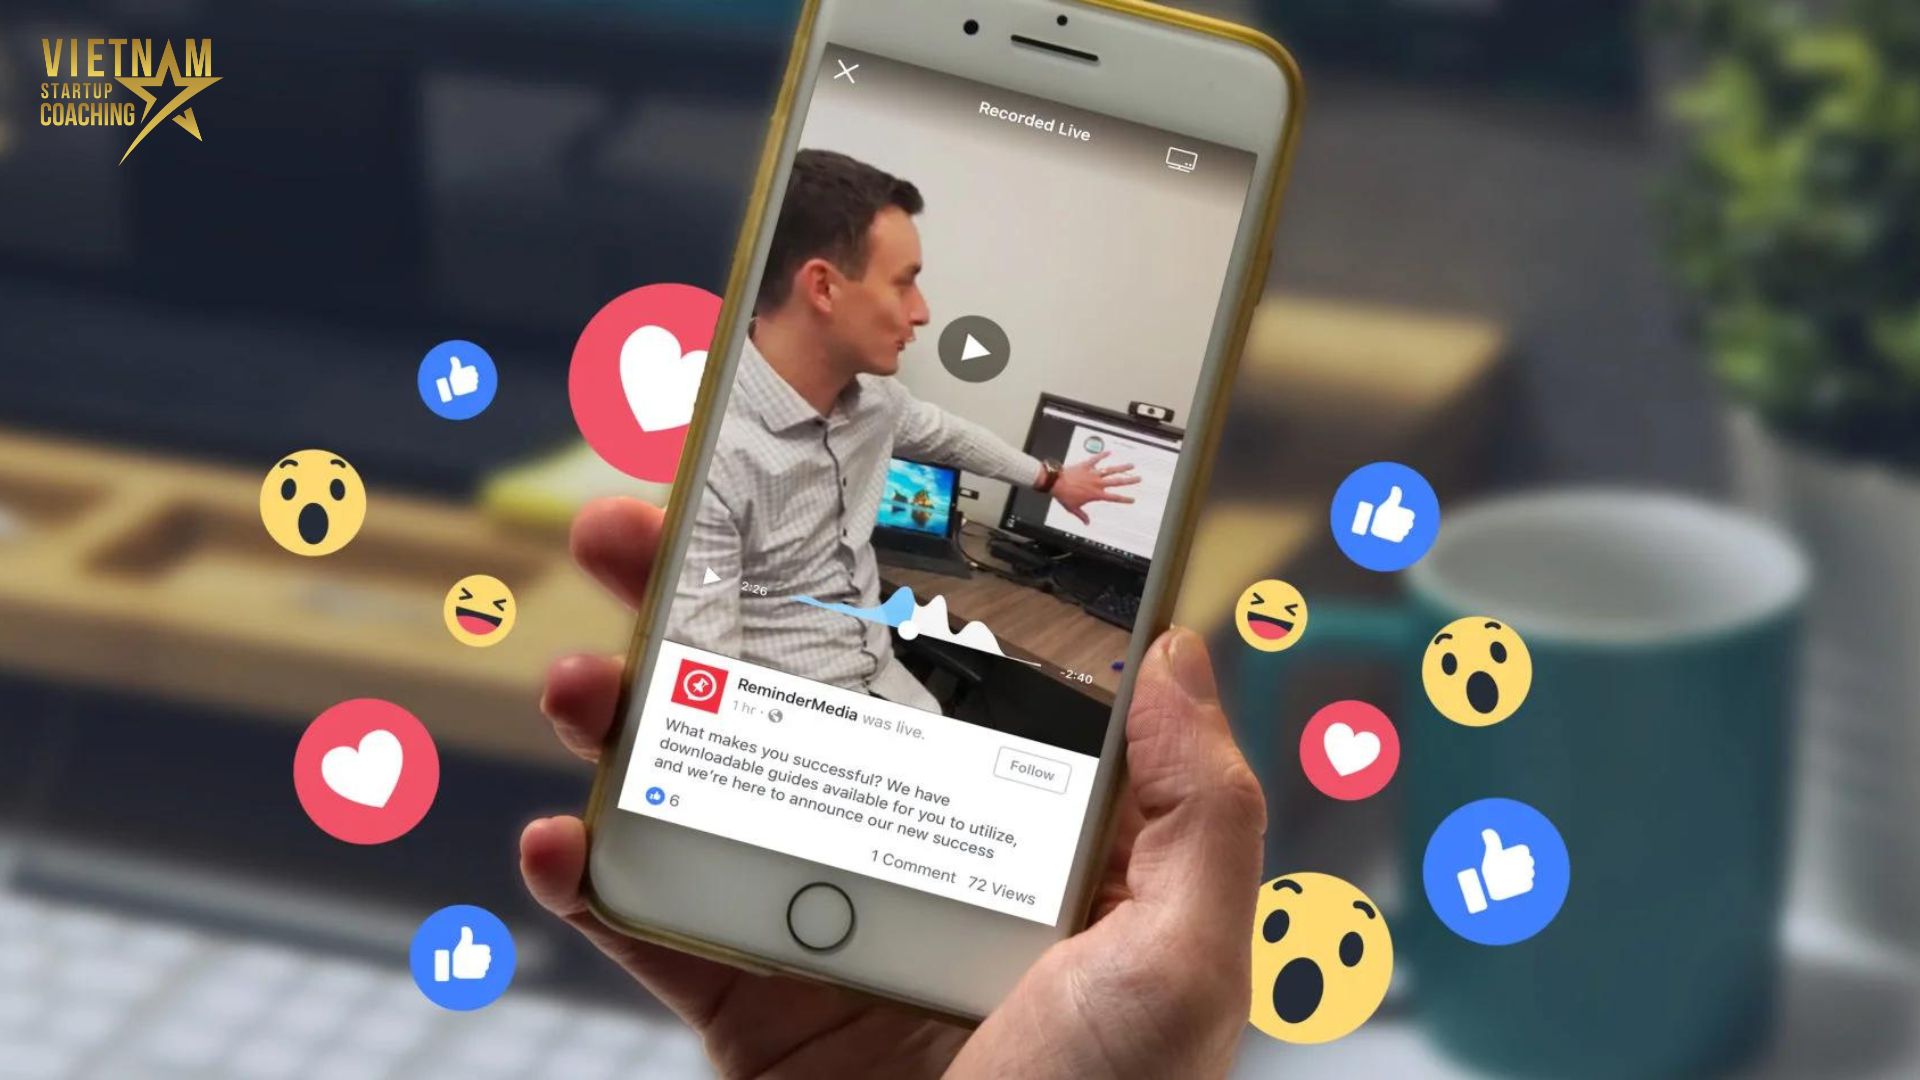 Livestream trên Facebook là một công nghệ cho phép người dùng phát trực tiếp video trực tiếp trên trang cá nhân hoặc trang doanh nghiệp trên Facebook